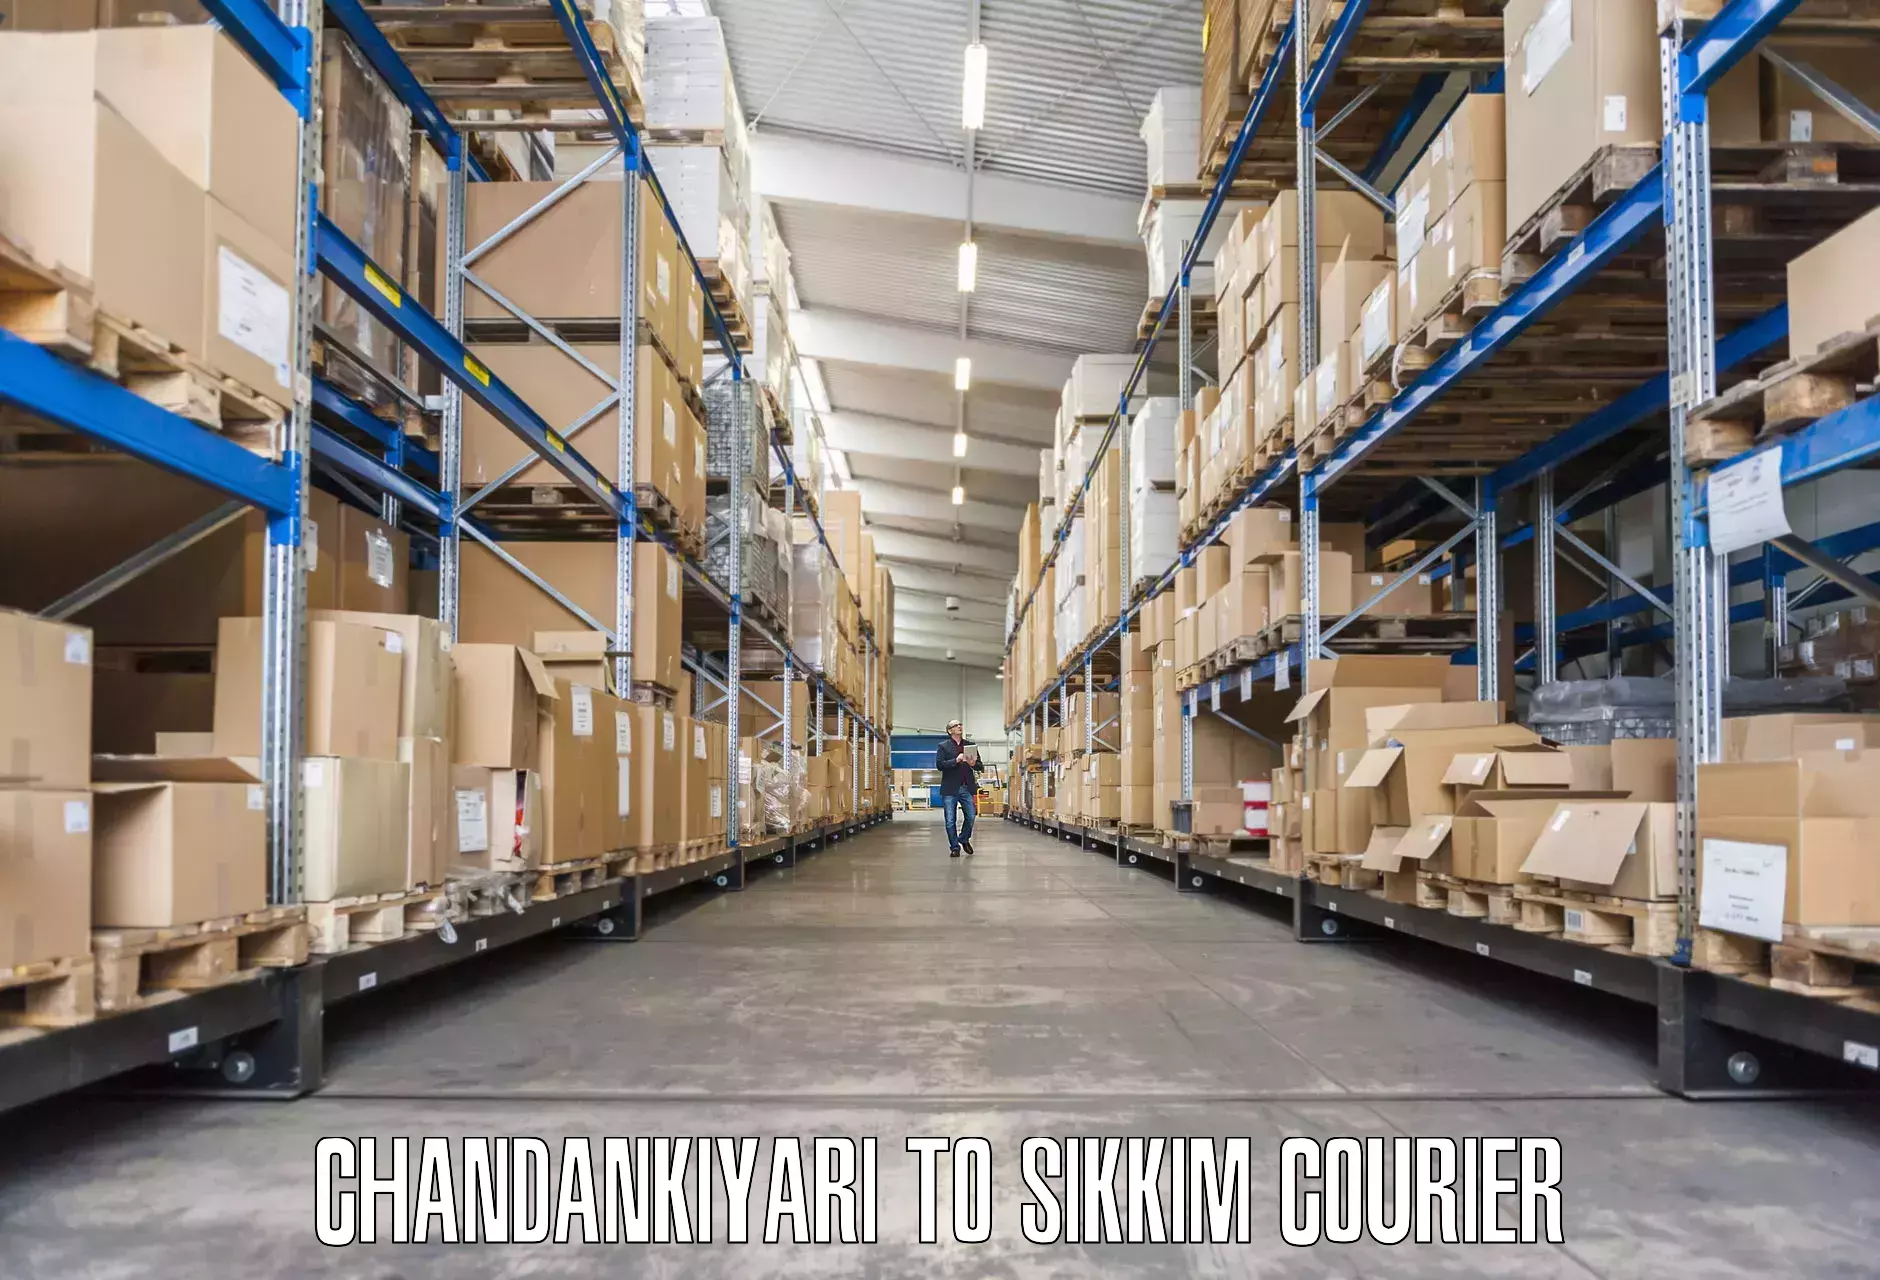 Expert moving and storage Chandankiyari to Ravangla